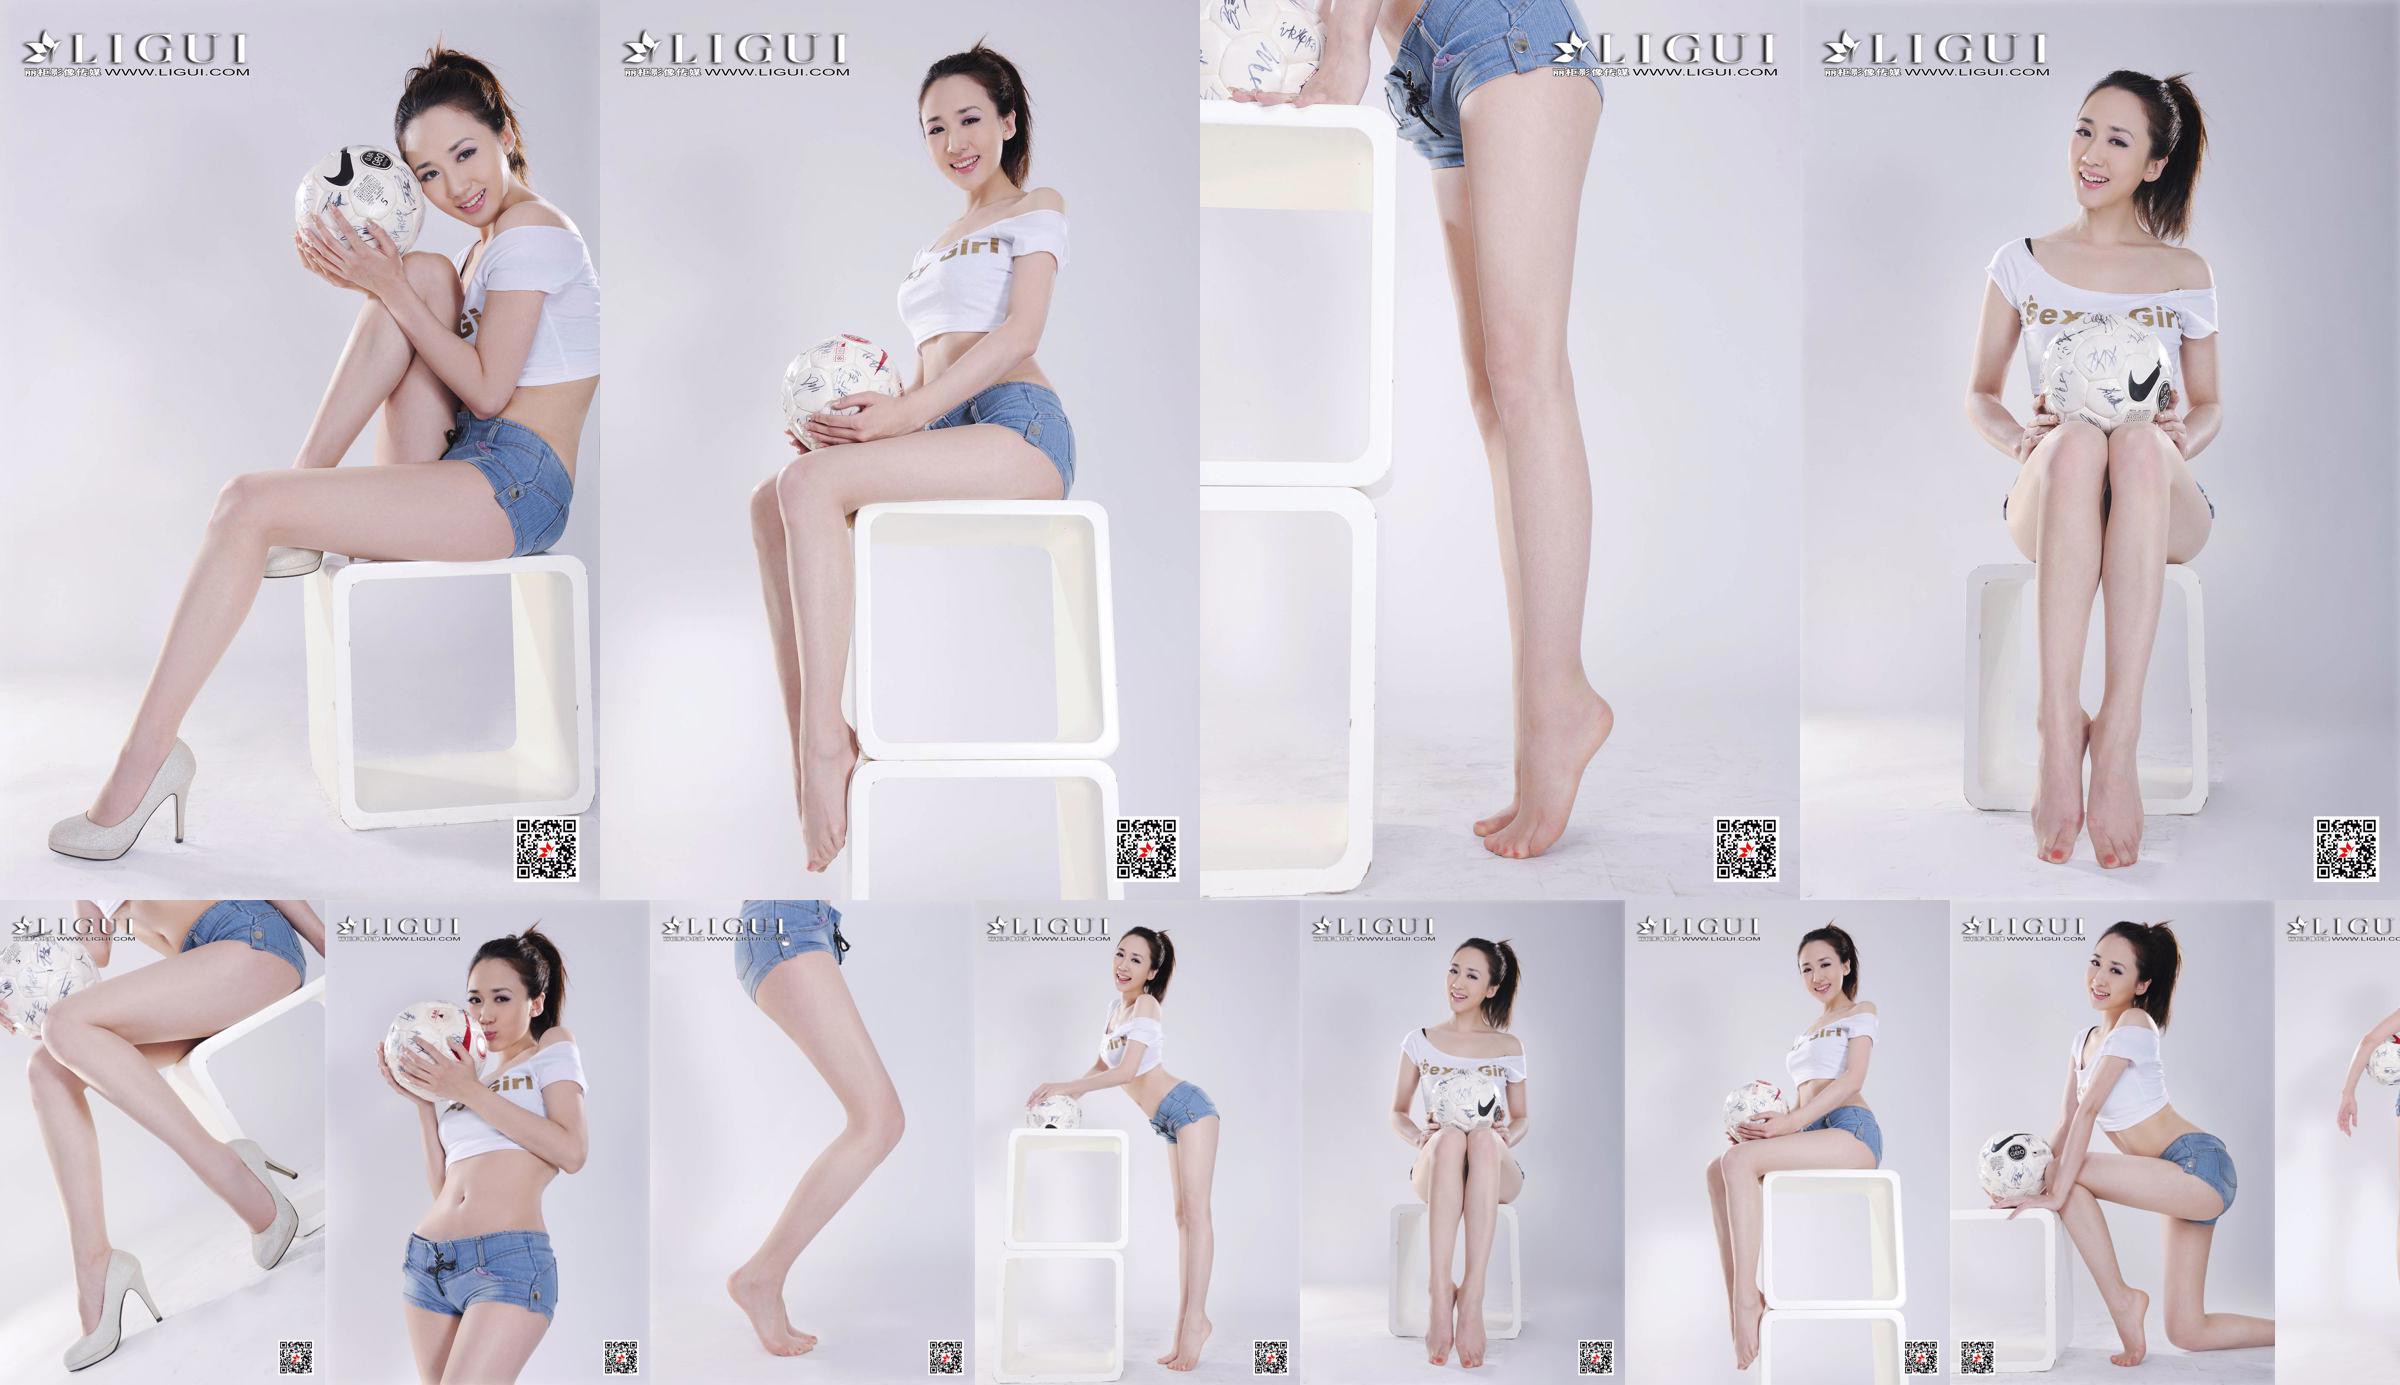 Model Qiu Chen "Super Short Hot Pants Football Girl" [LIGUI] No.1e9be4 Pagina 4